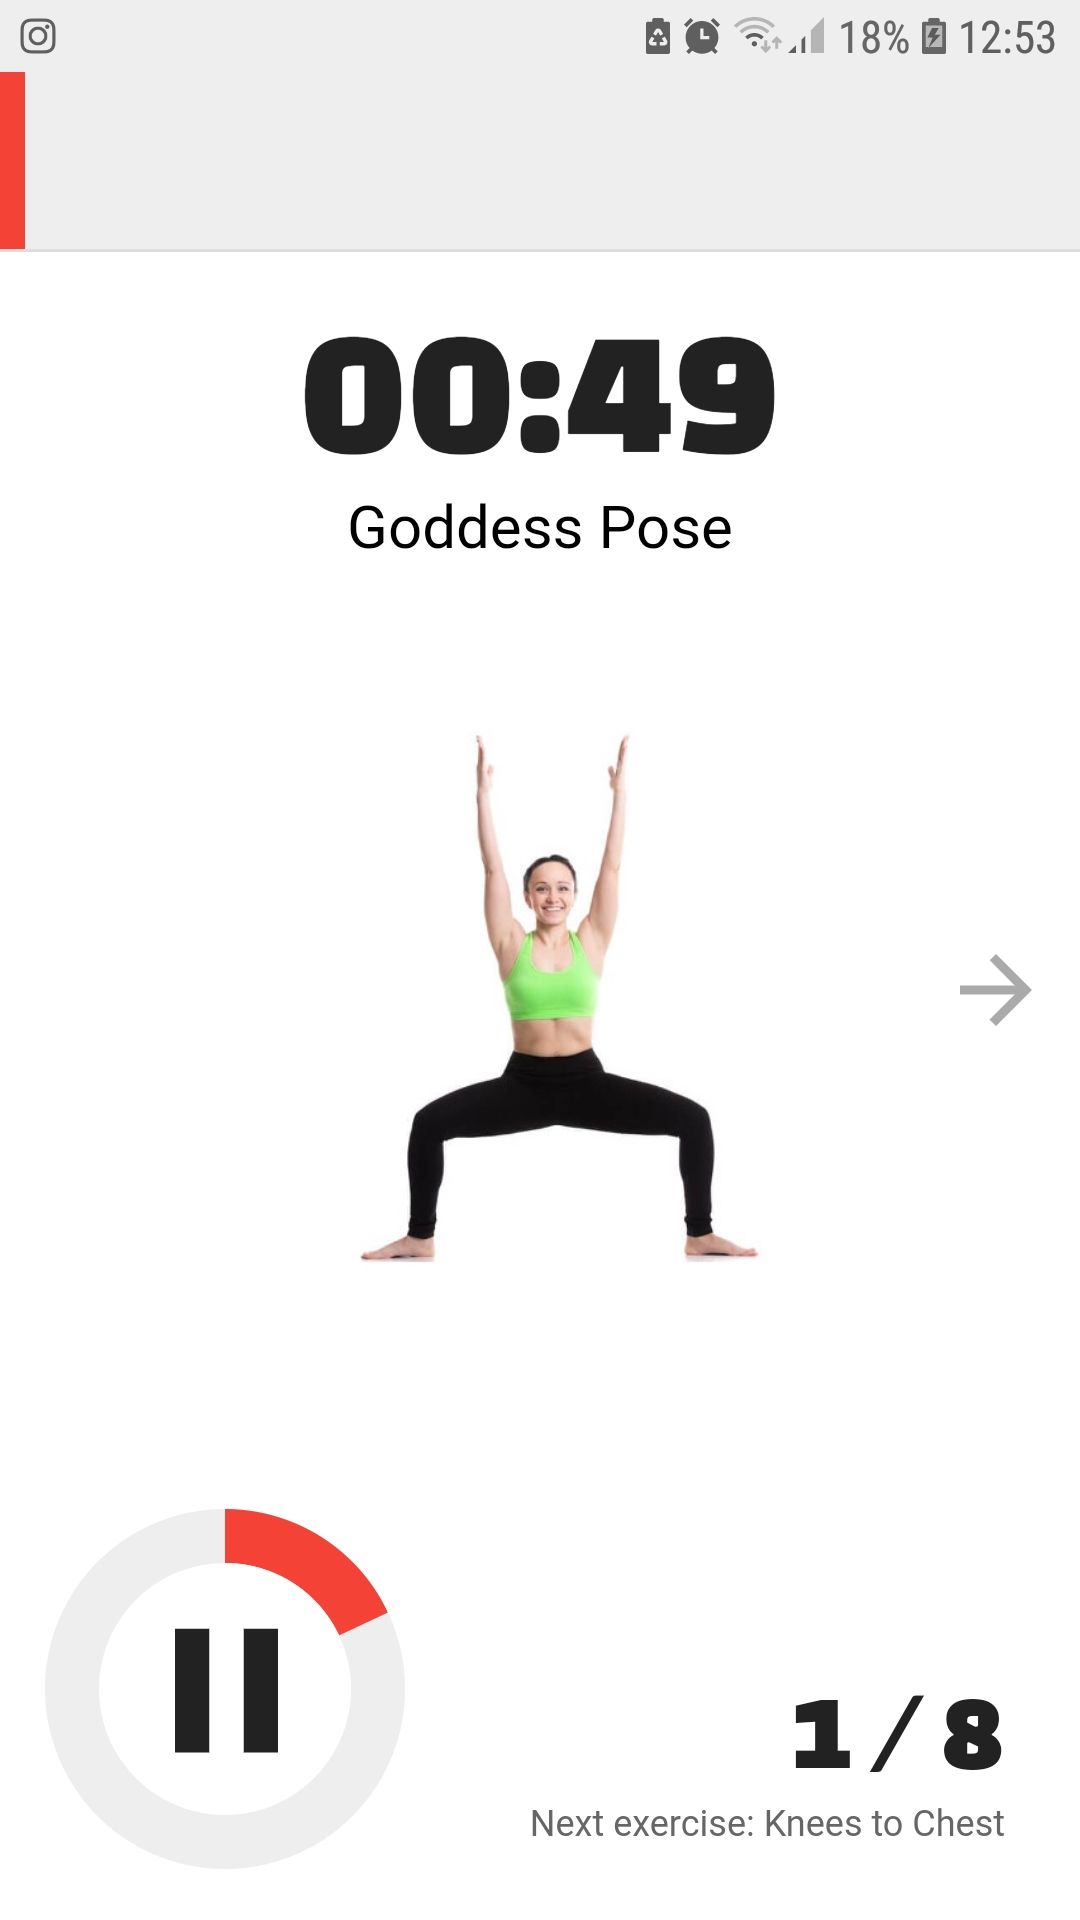 Prenatal Yoga Poses mobile workout app goddess pose